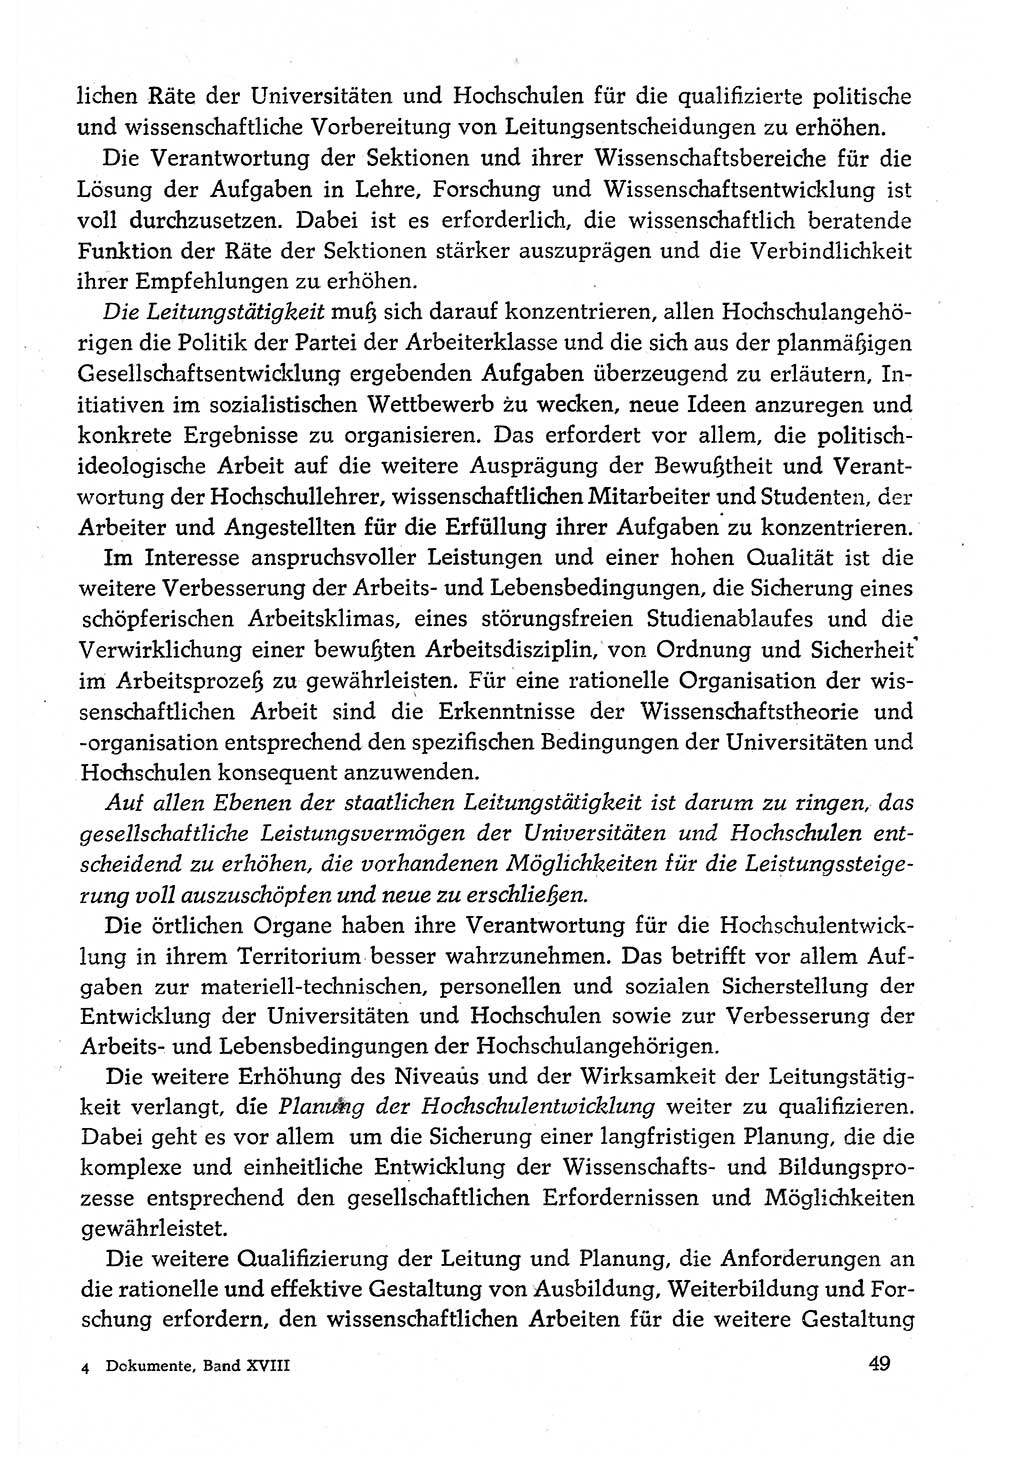 Dokumente der Sozialistischen Einheitspartei Deutschlands (SED) [Deutsche Demokratische Republik (DDR)] 1980-1981, Seite 49 (Dok. SED DDR 1980-1981, S. 49)